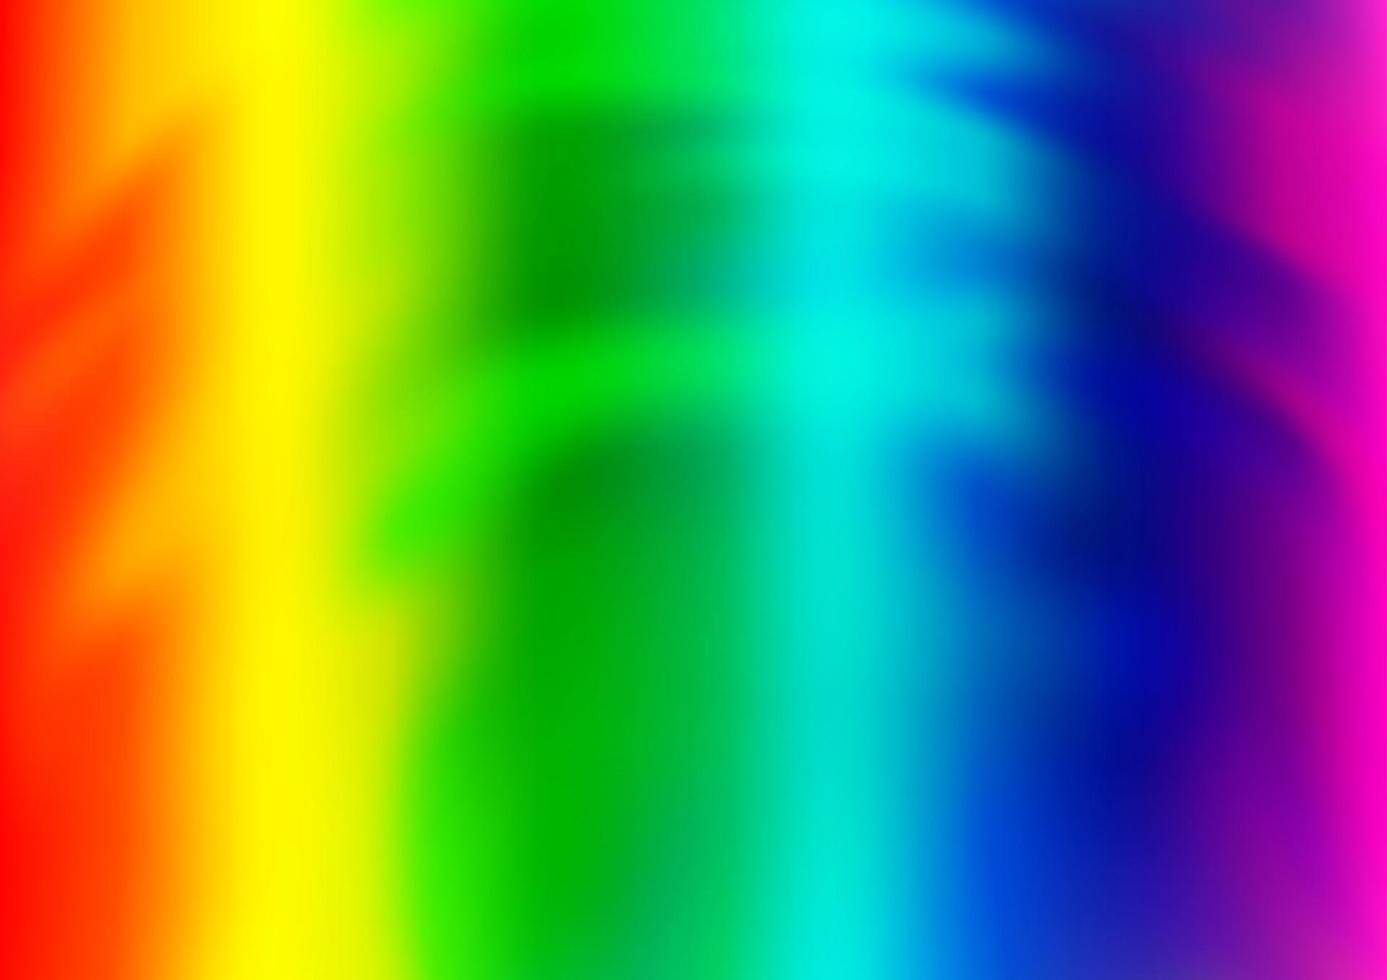 luz multicolor, modelo abstrato de vetor de arco-íris.